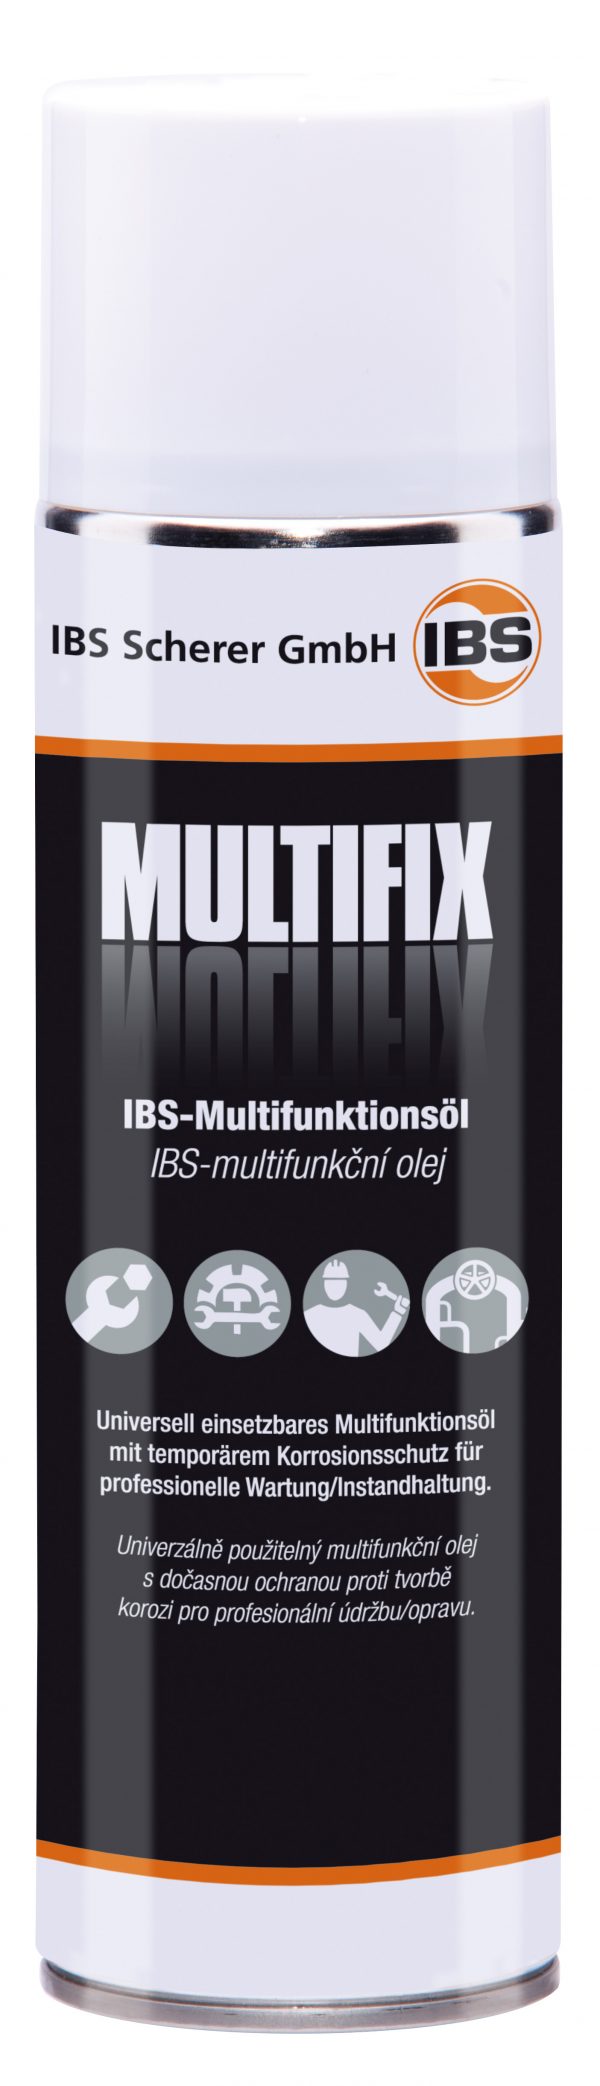 IBS-Multifunktionsöl MultiFix